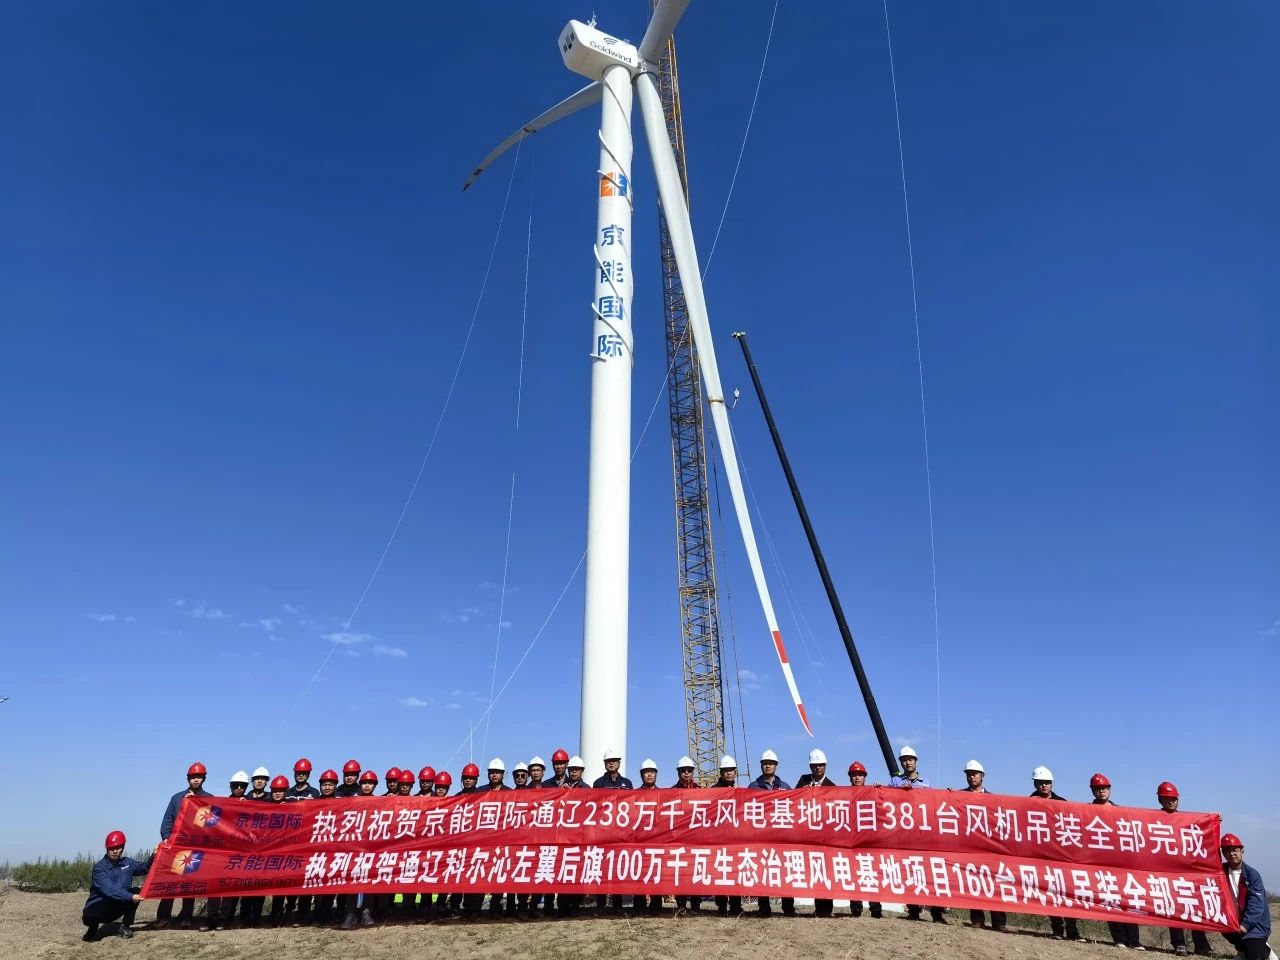 京能国际内蒙古通辽2.38GW风电<em>基地项目</em>381台风力发电机组吊装全部完成